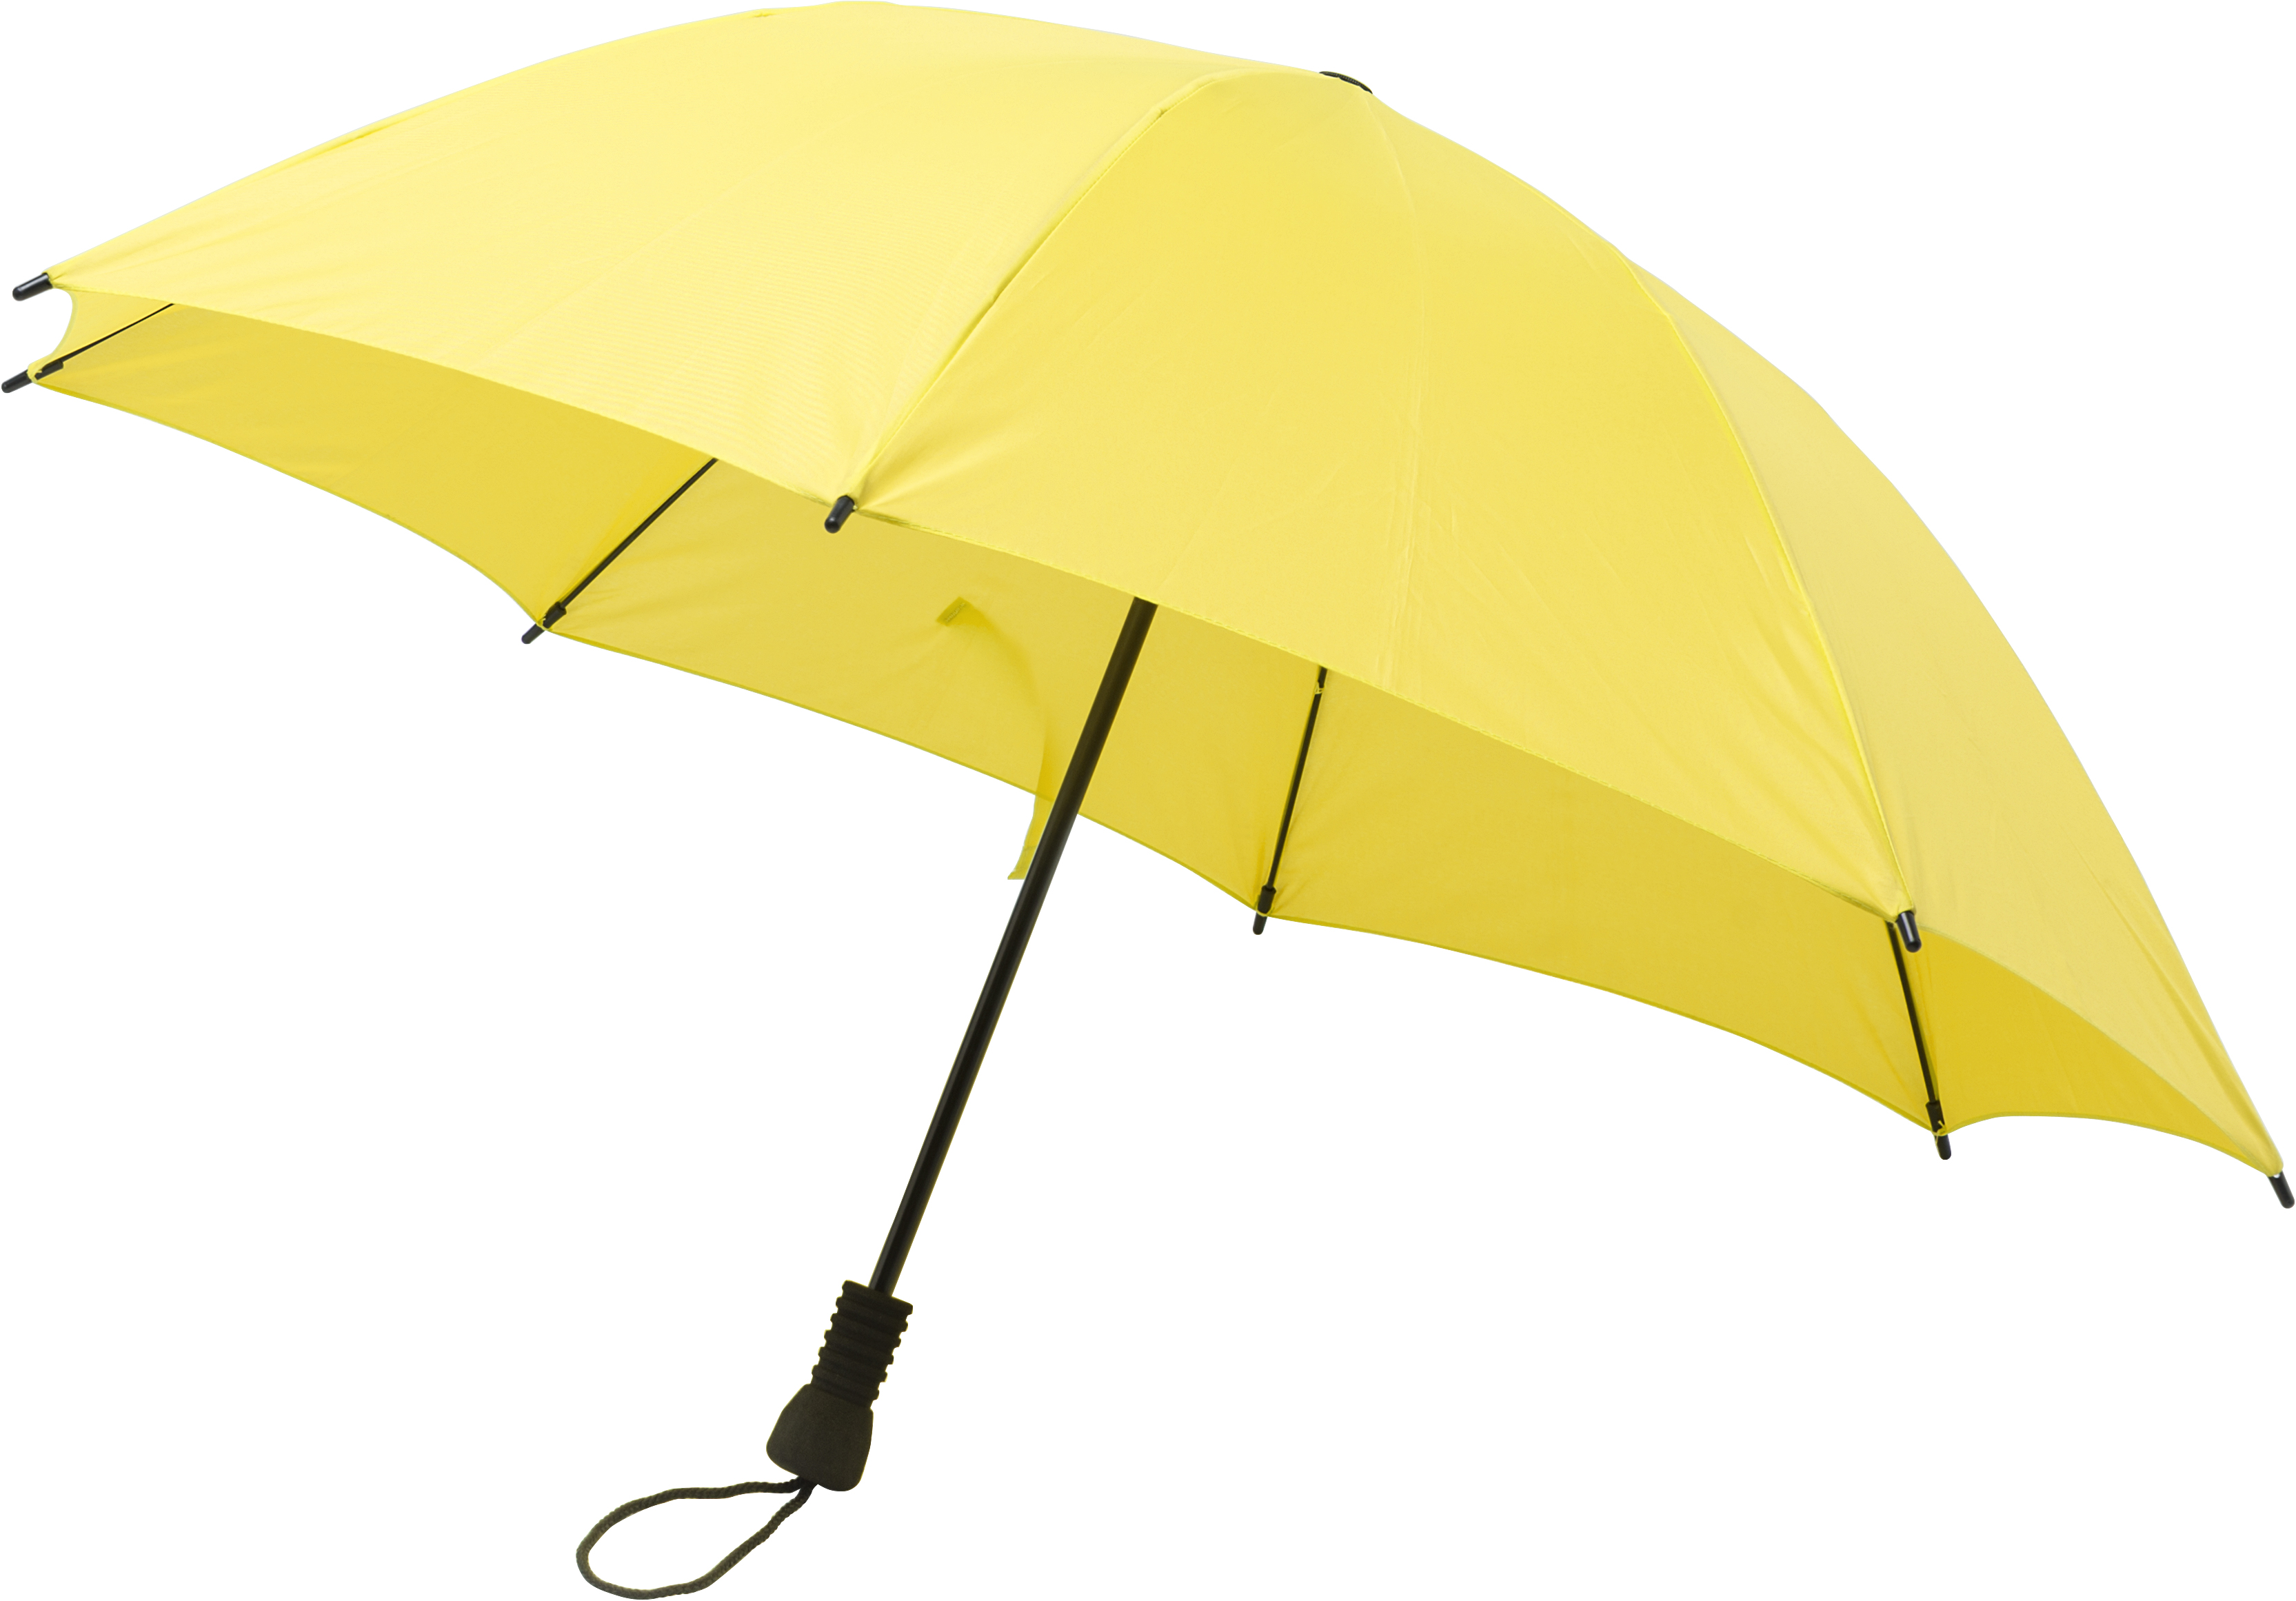 009252 006999999 3d045 ins pro01 fal - Foldable umbrella